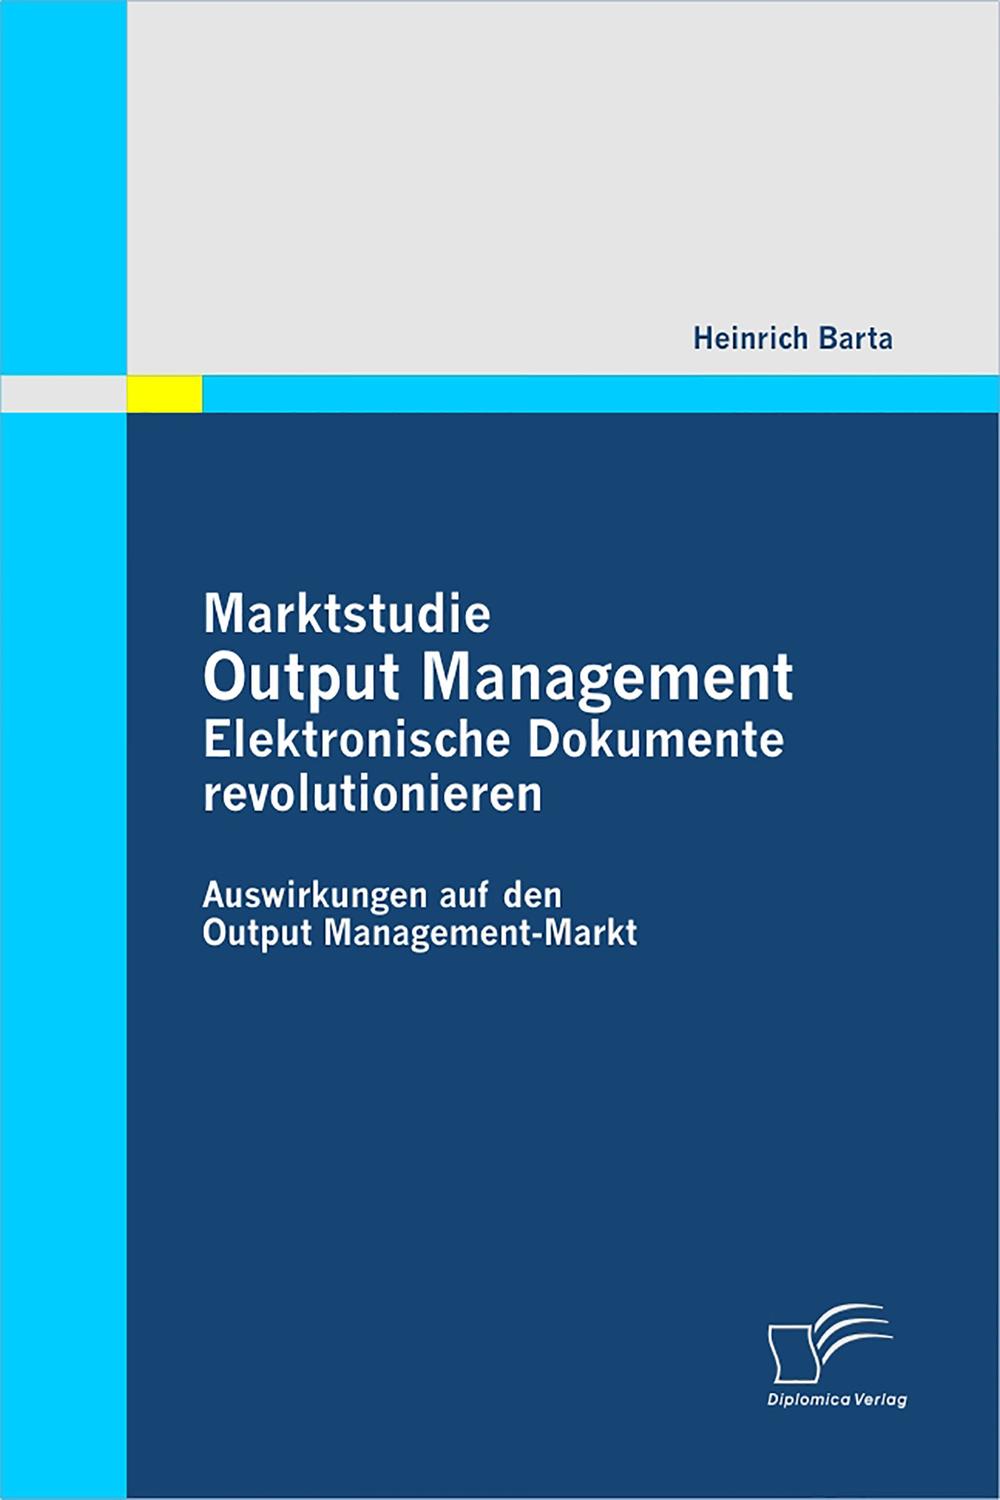 Marktstudie Output Management: Elektronische Dokumente revolutionieren - Heinrich Barta